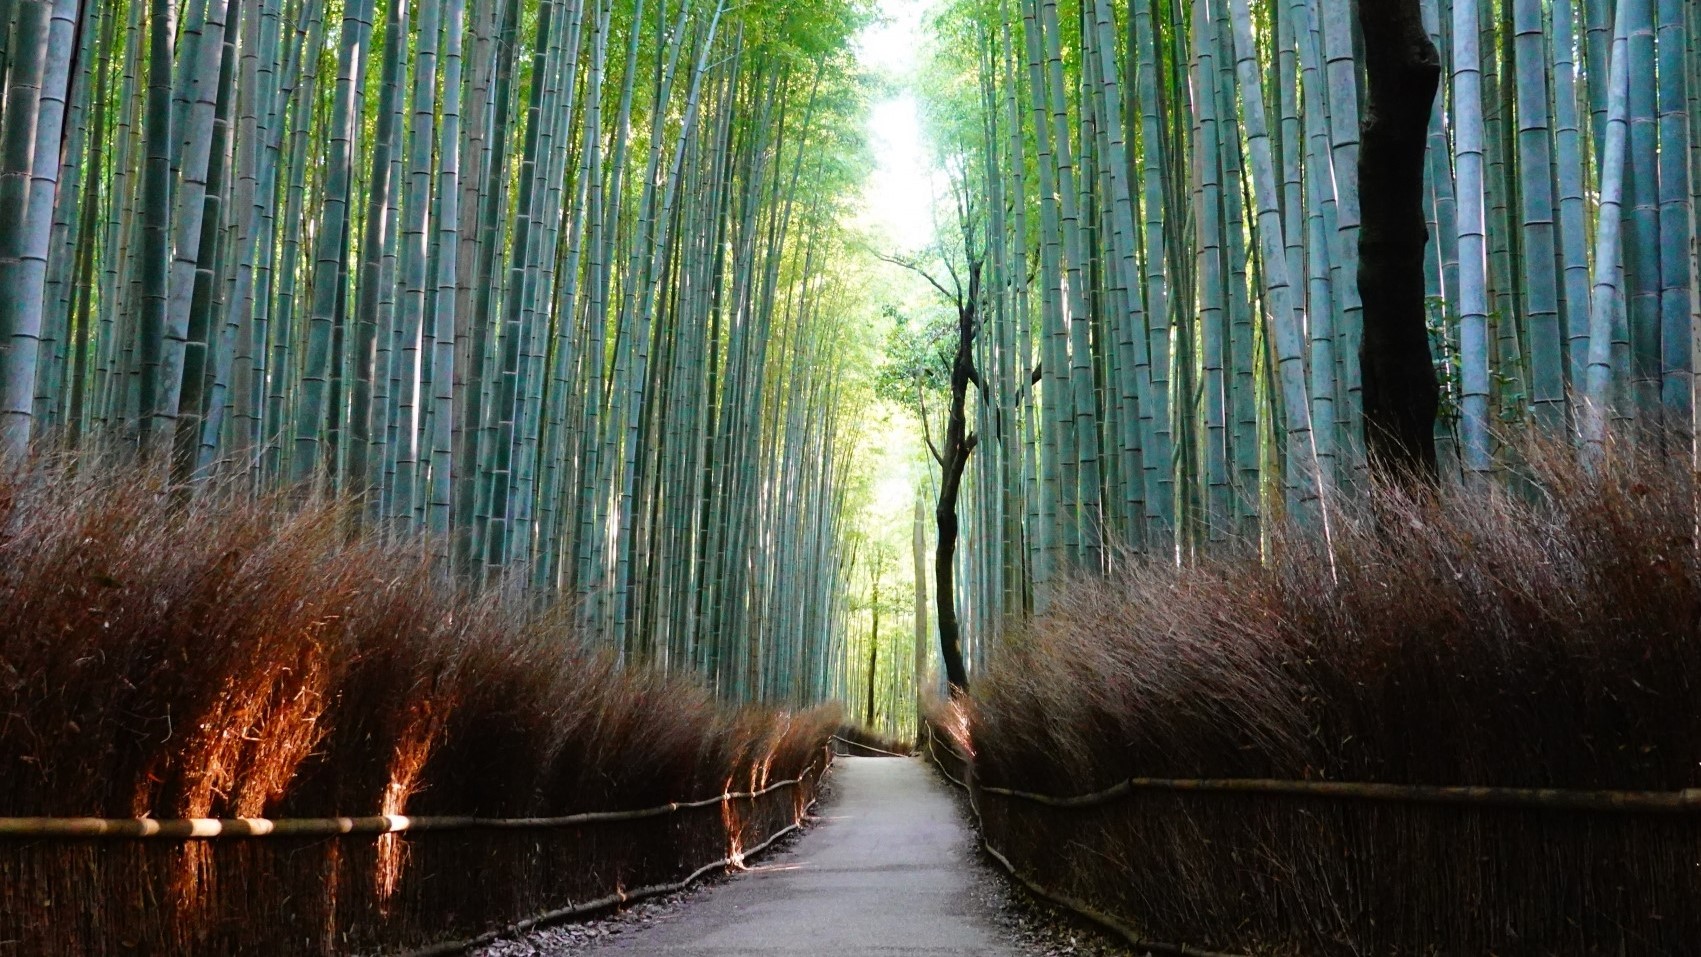 ■嵐山・竹林の小径■渡月橋の北側、嵯峨野に広がる竹林の小径をのんびり散歩してはいかがでしょう。